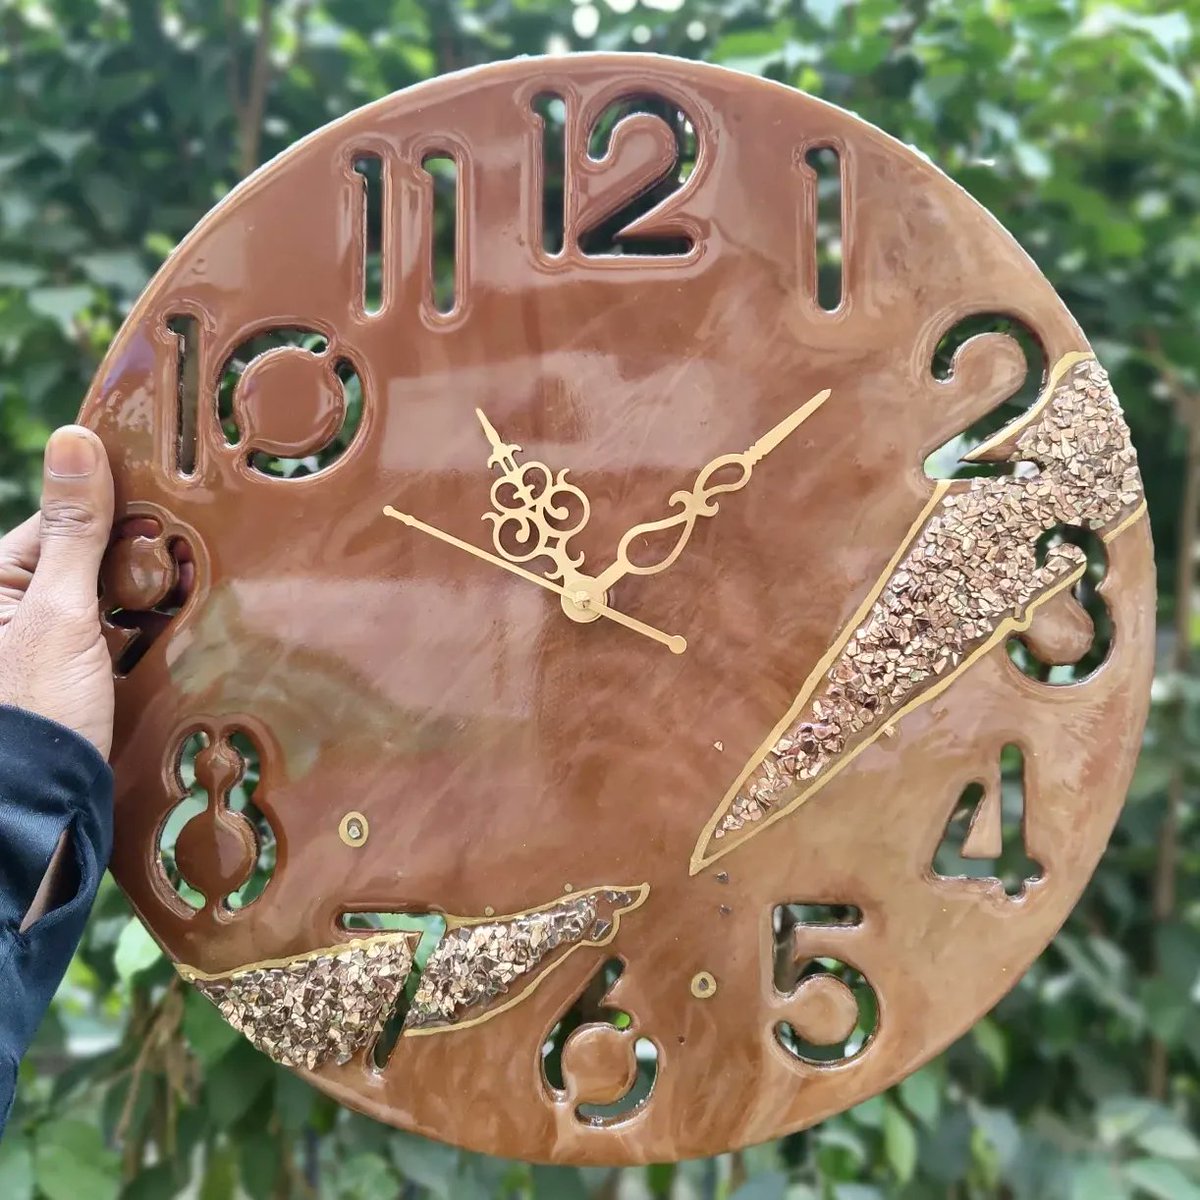 Resin wall clocks available for sale.

Handmade resin clock of 12''.
.
.
#resinart #resin #handmade #resinartist #resinartwork #epoxyresin #resincraft #smallbusiness #epoxyart #resinclock #homedecor #resinmolds  #fluidart  #clocks